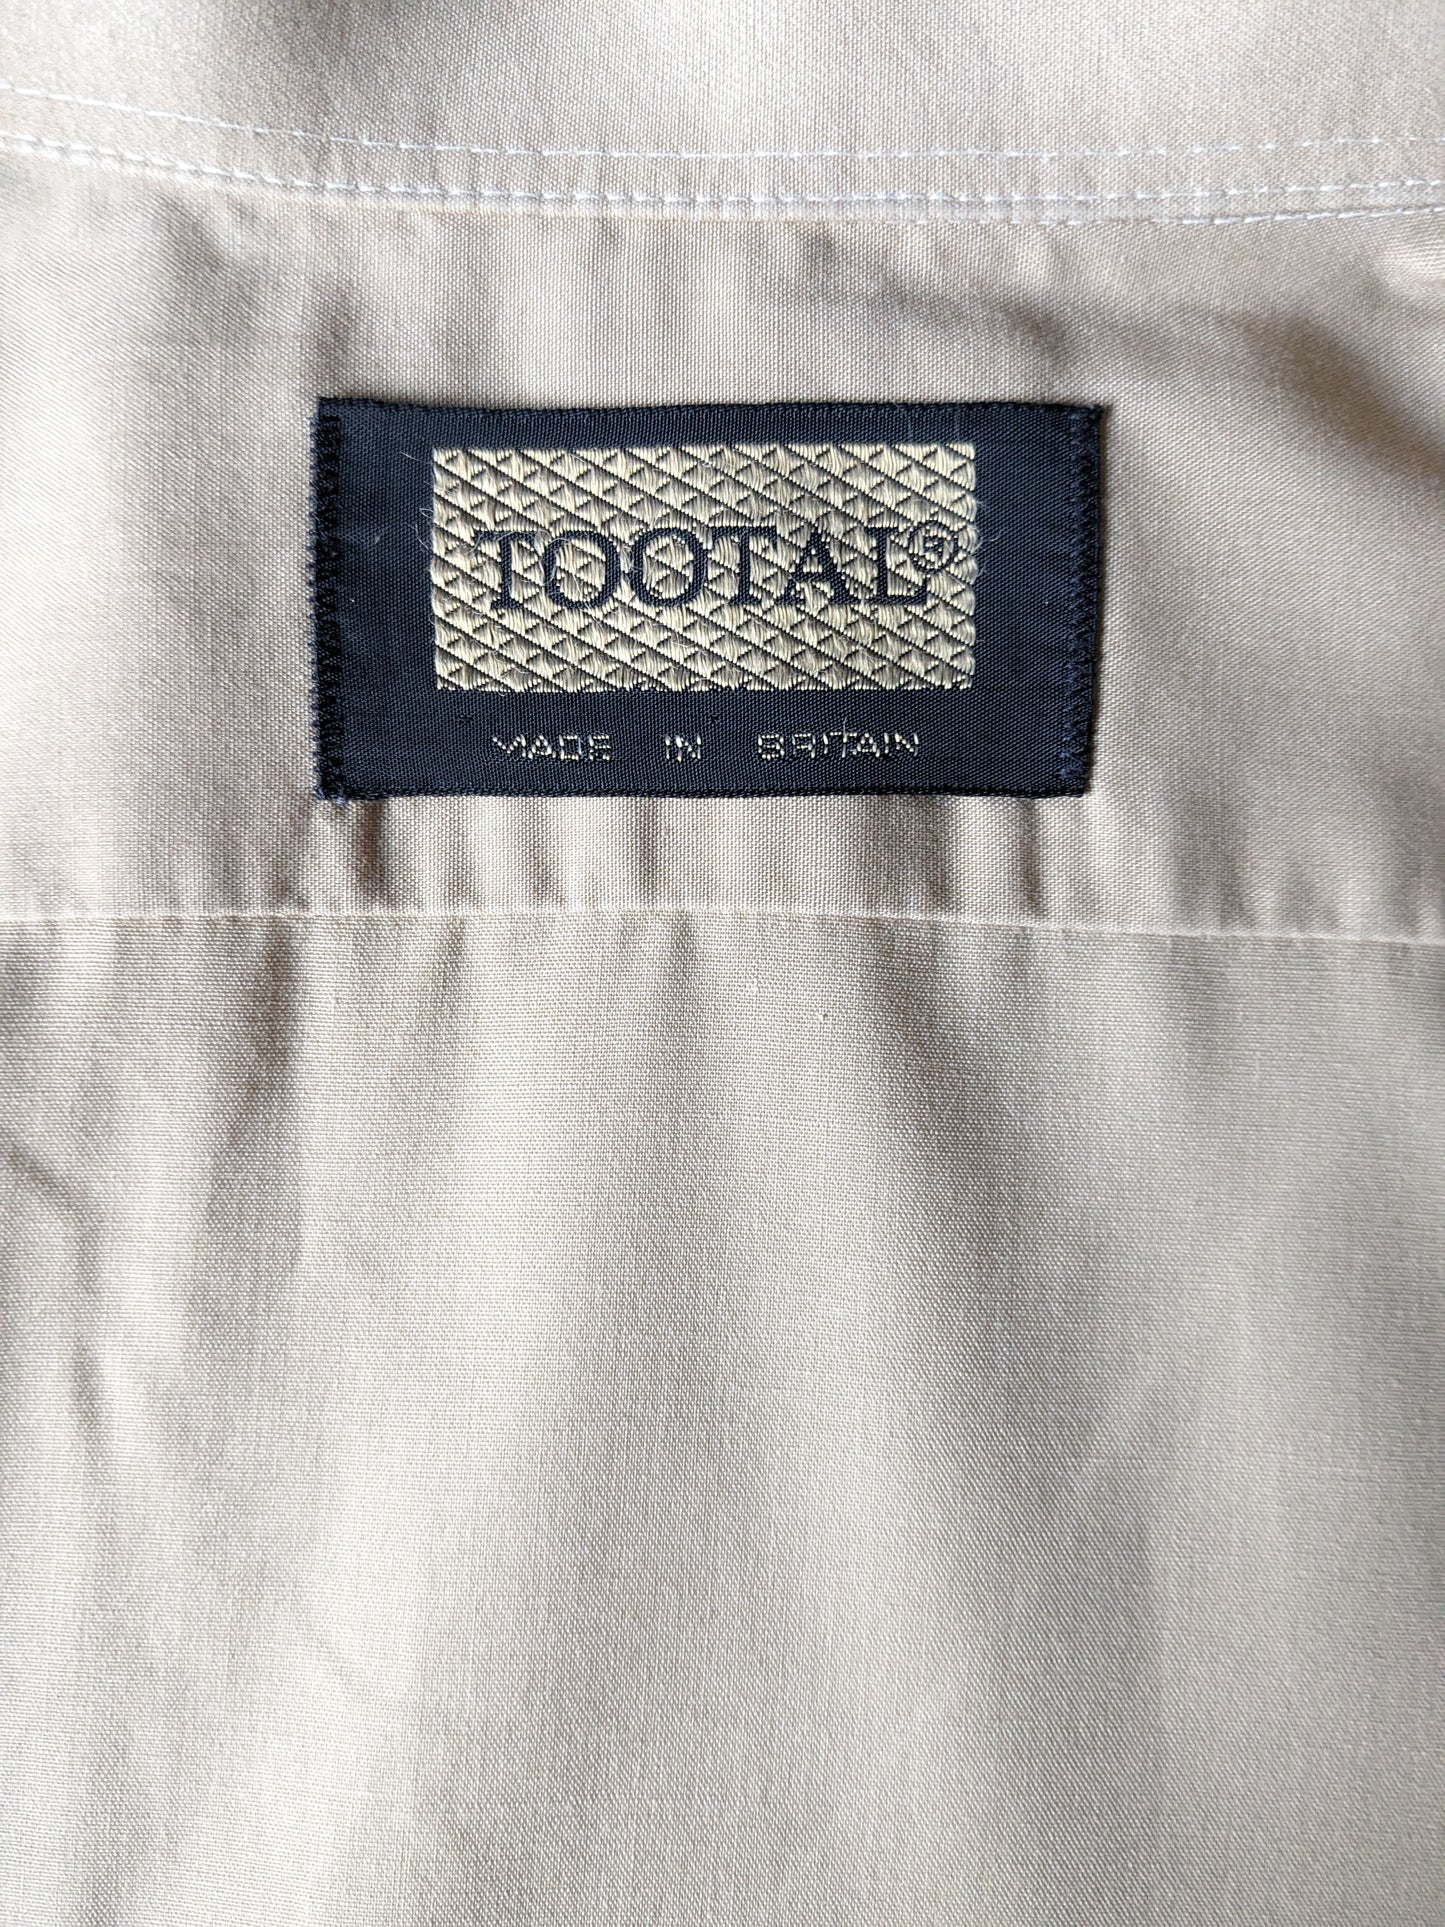 Vintage Tootal 70er Hemd mit Punktkragen. Hellbraun gefärbt. Größe M.